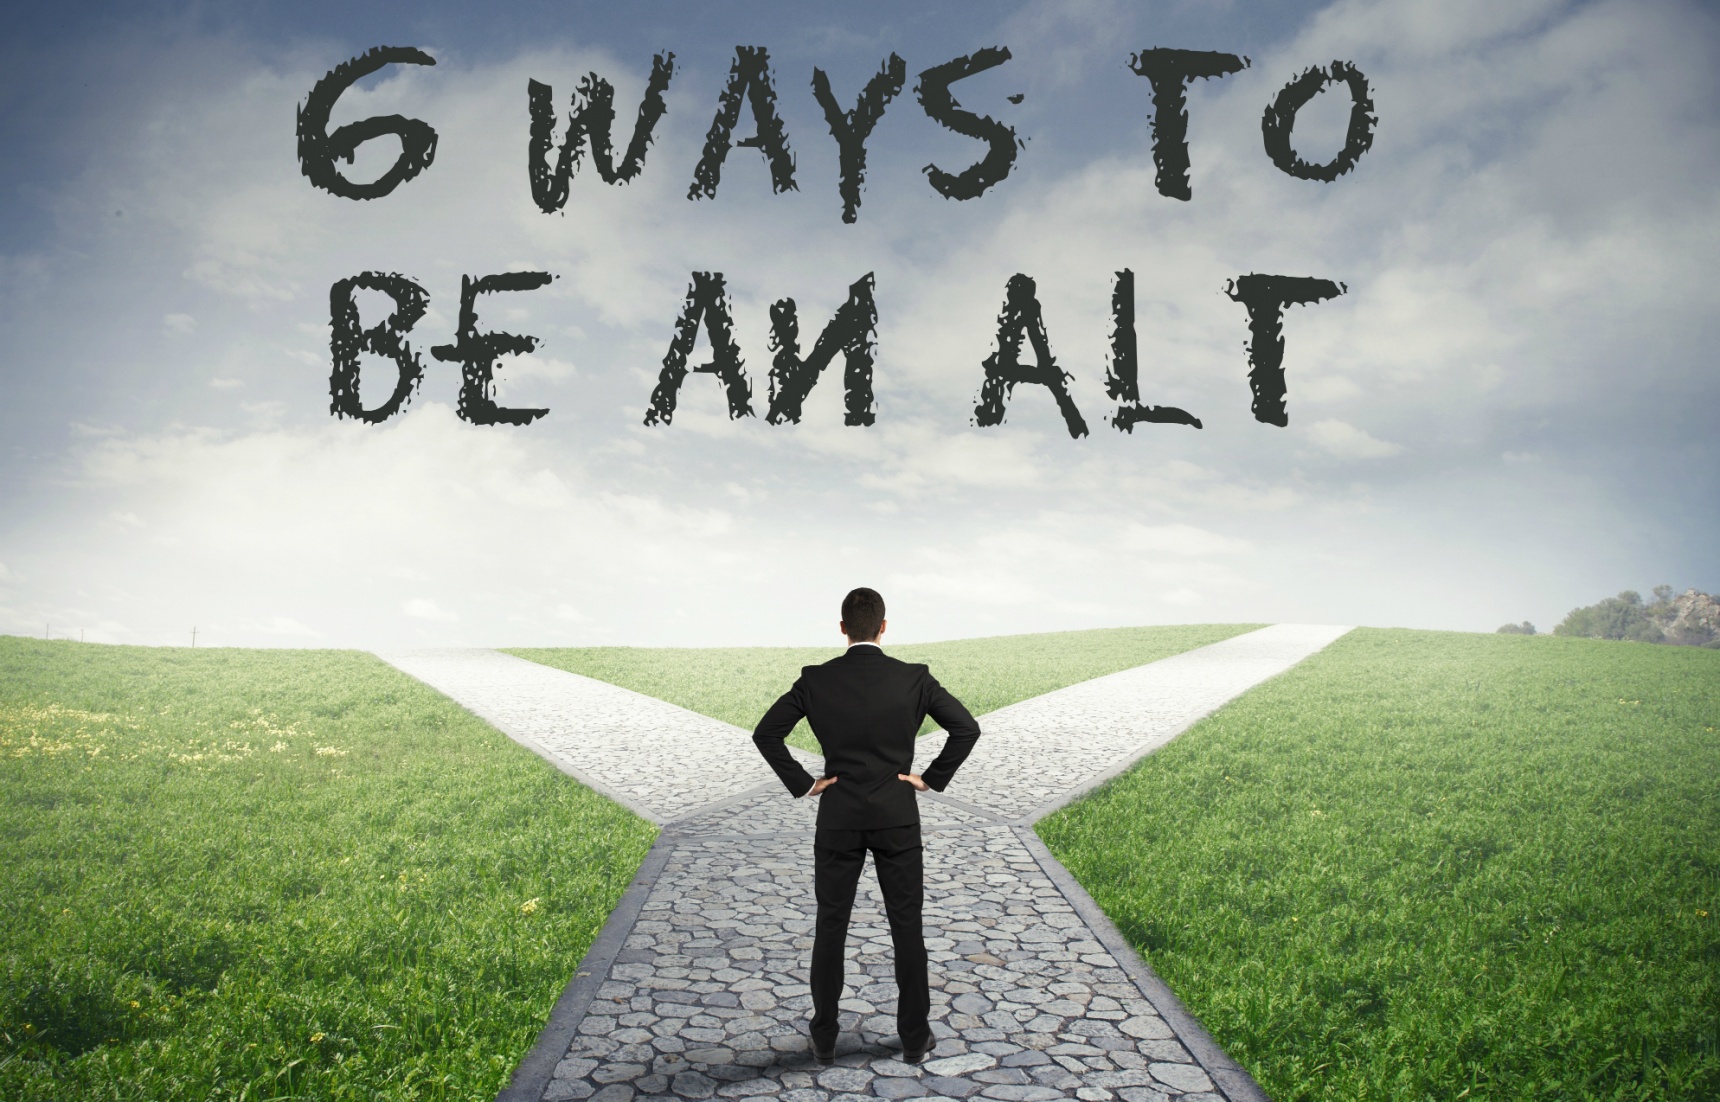 6 Ways to Be an ALT